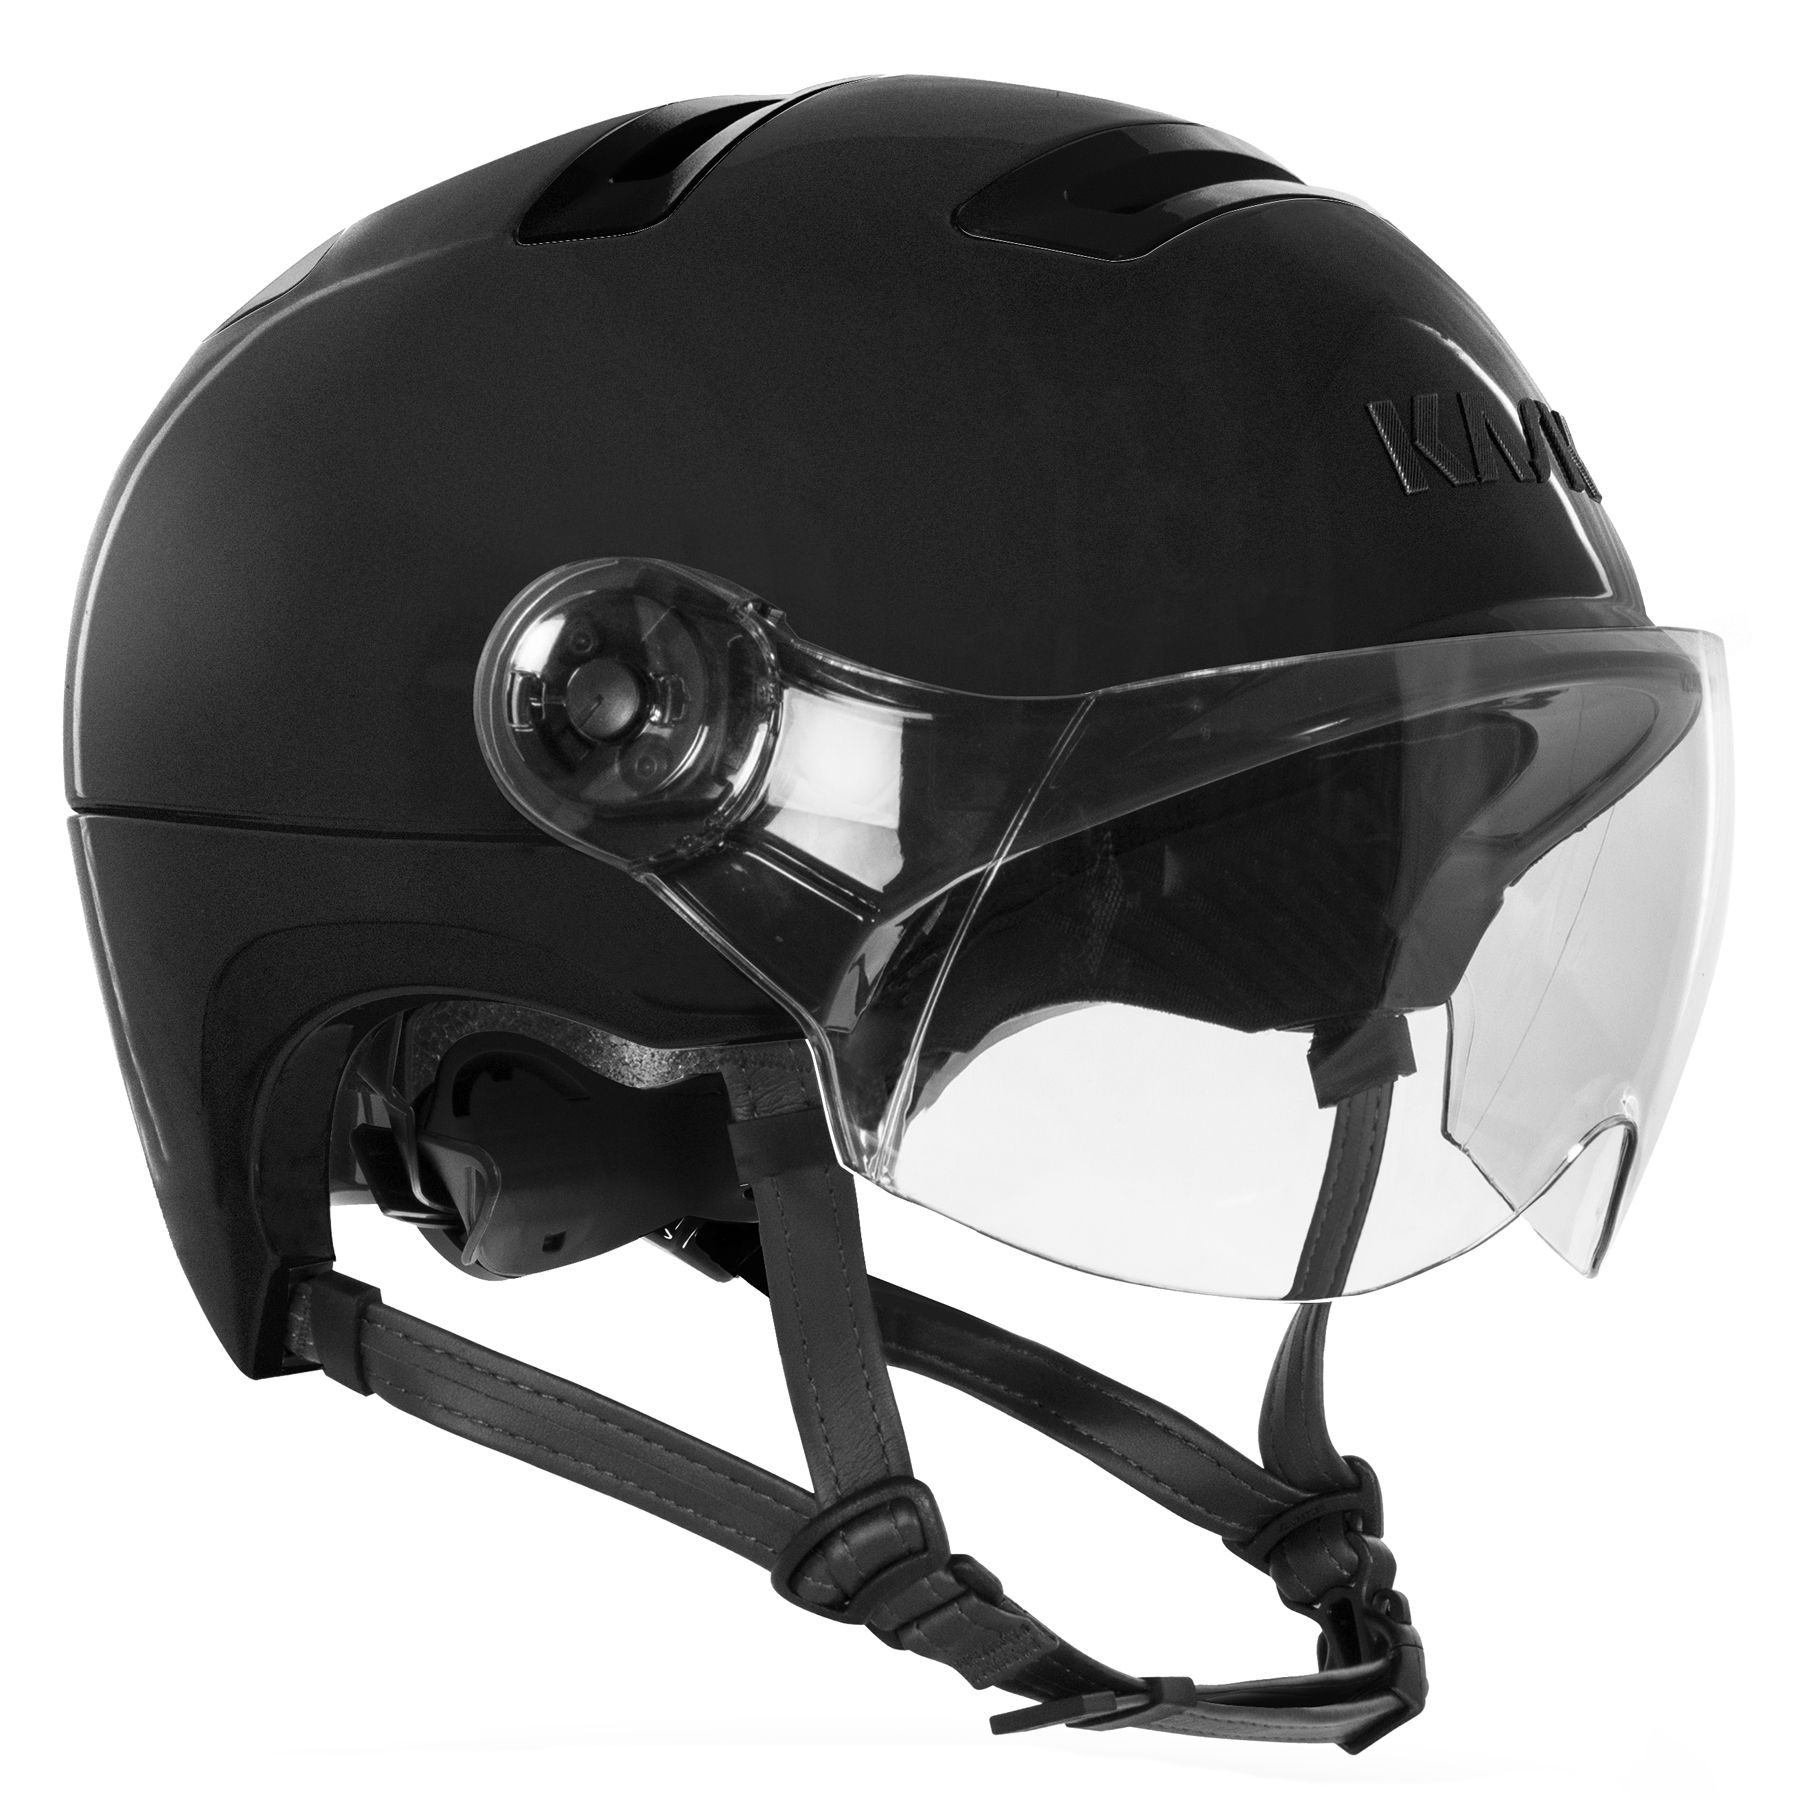 Picture of KASK Urban R WG11 Helmet - Onyx